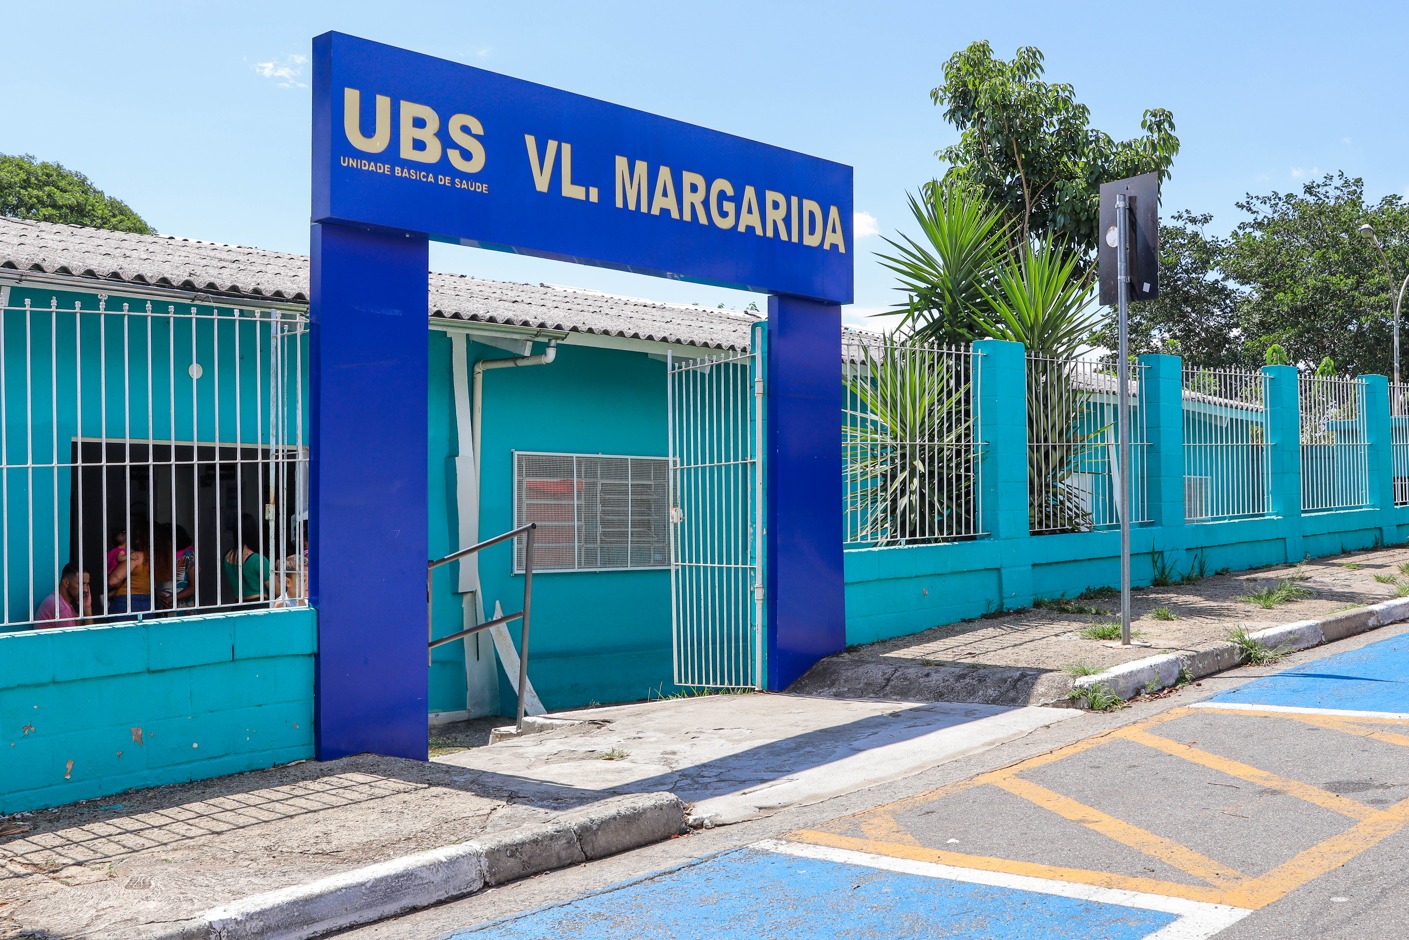 UBS-Vila-Margarida.jpeg